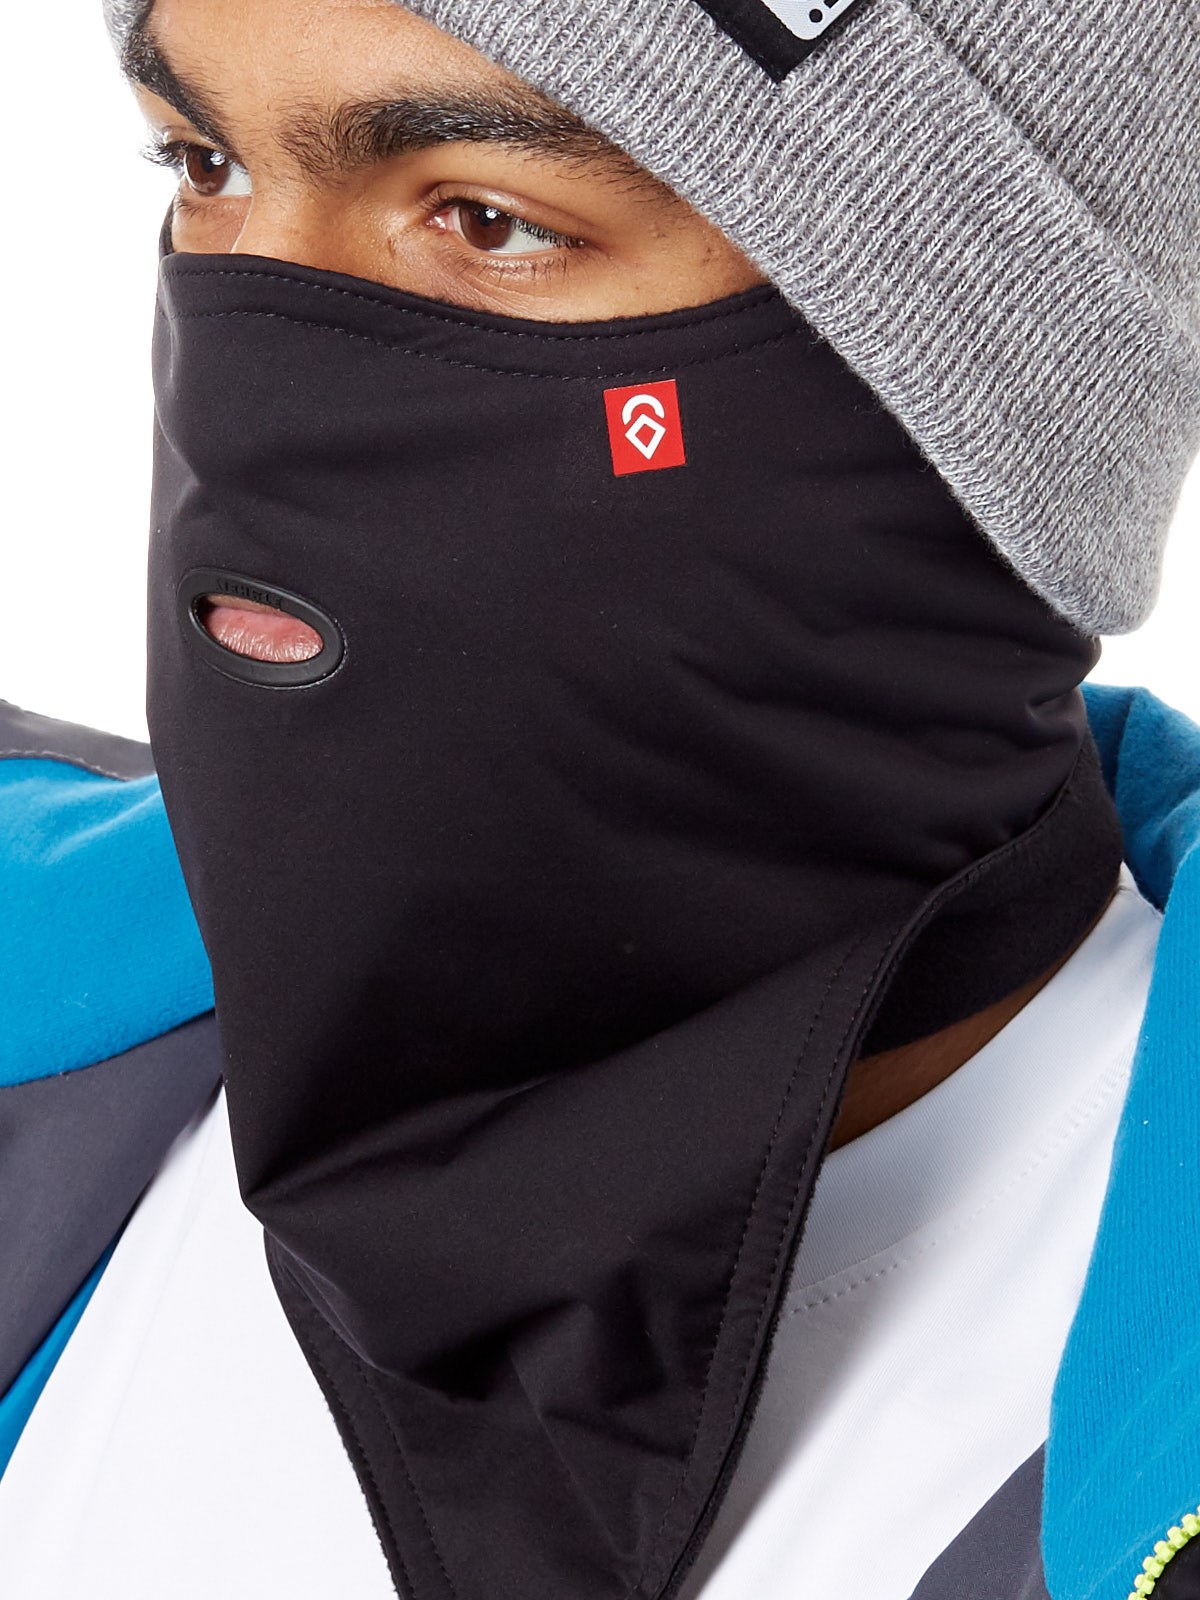 Airhole Standard 2-Layer Snowboard/Ski Face Mask